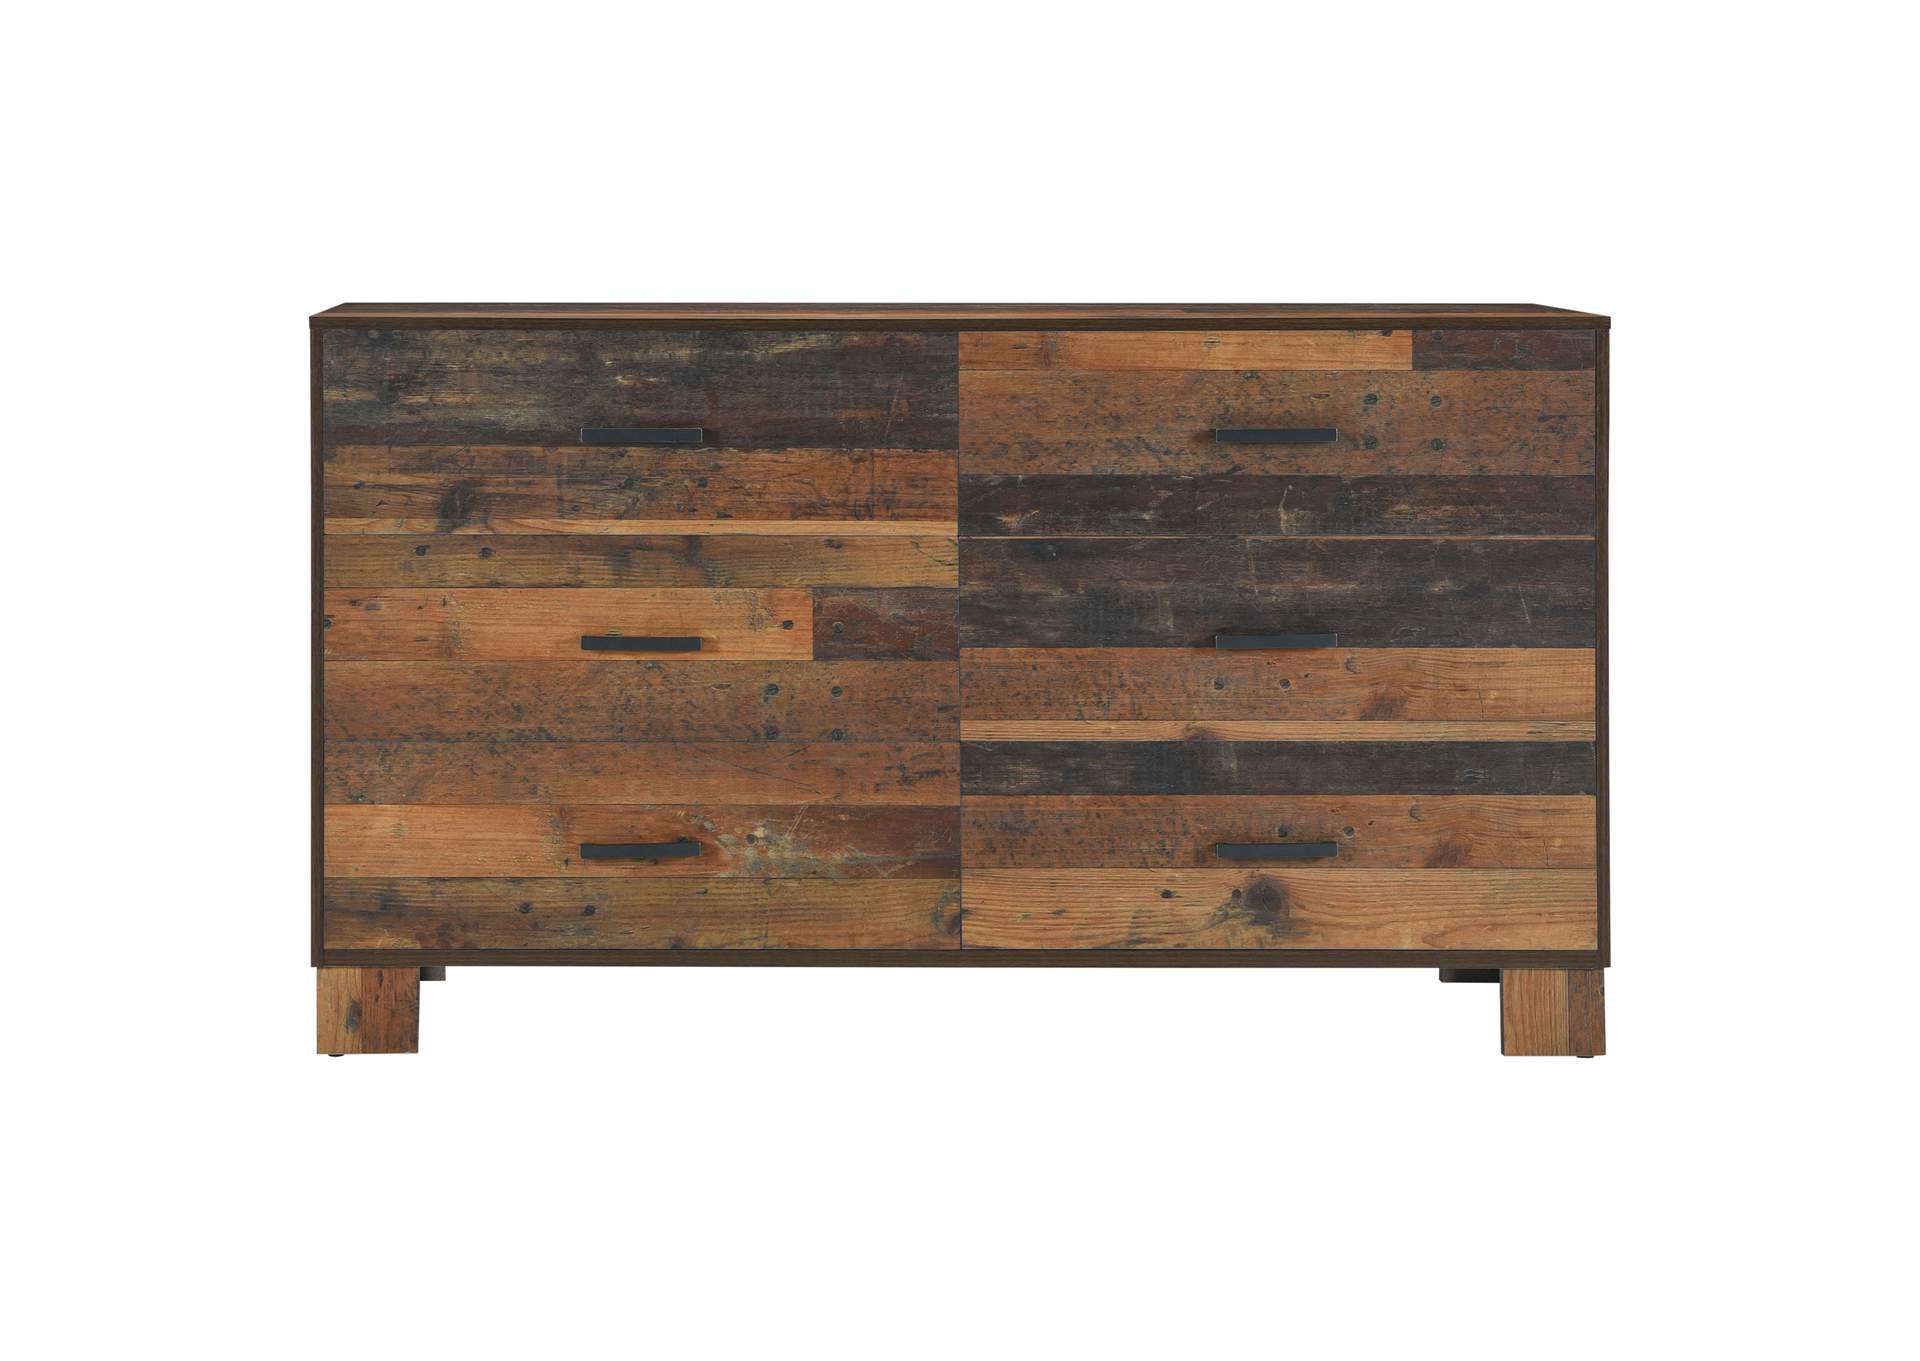 Sidney 4-piece Queen Panel Bedroom Set Rustic Pine,Coaster Furniture